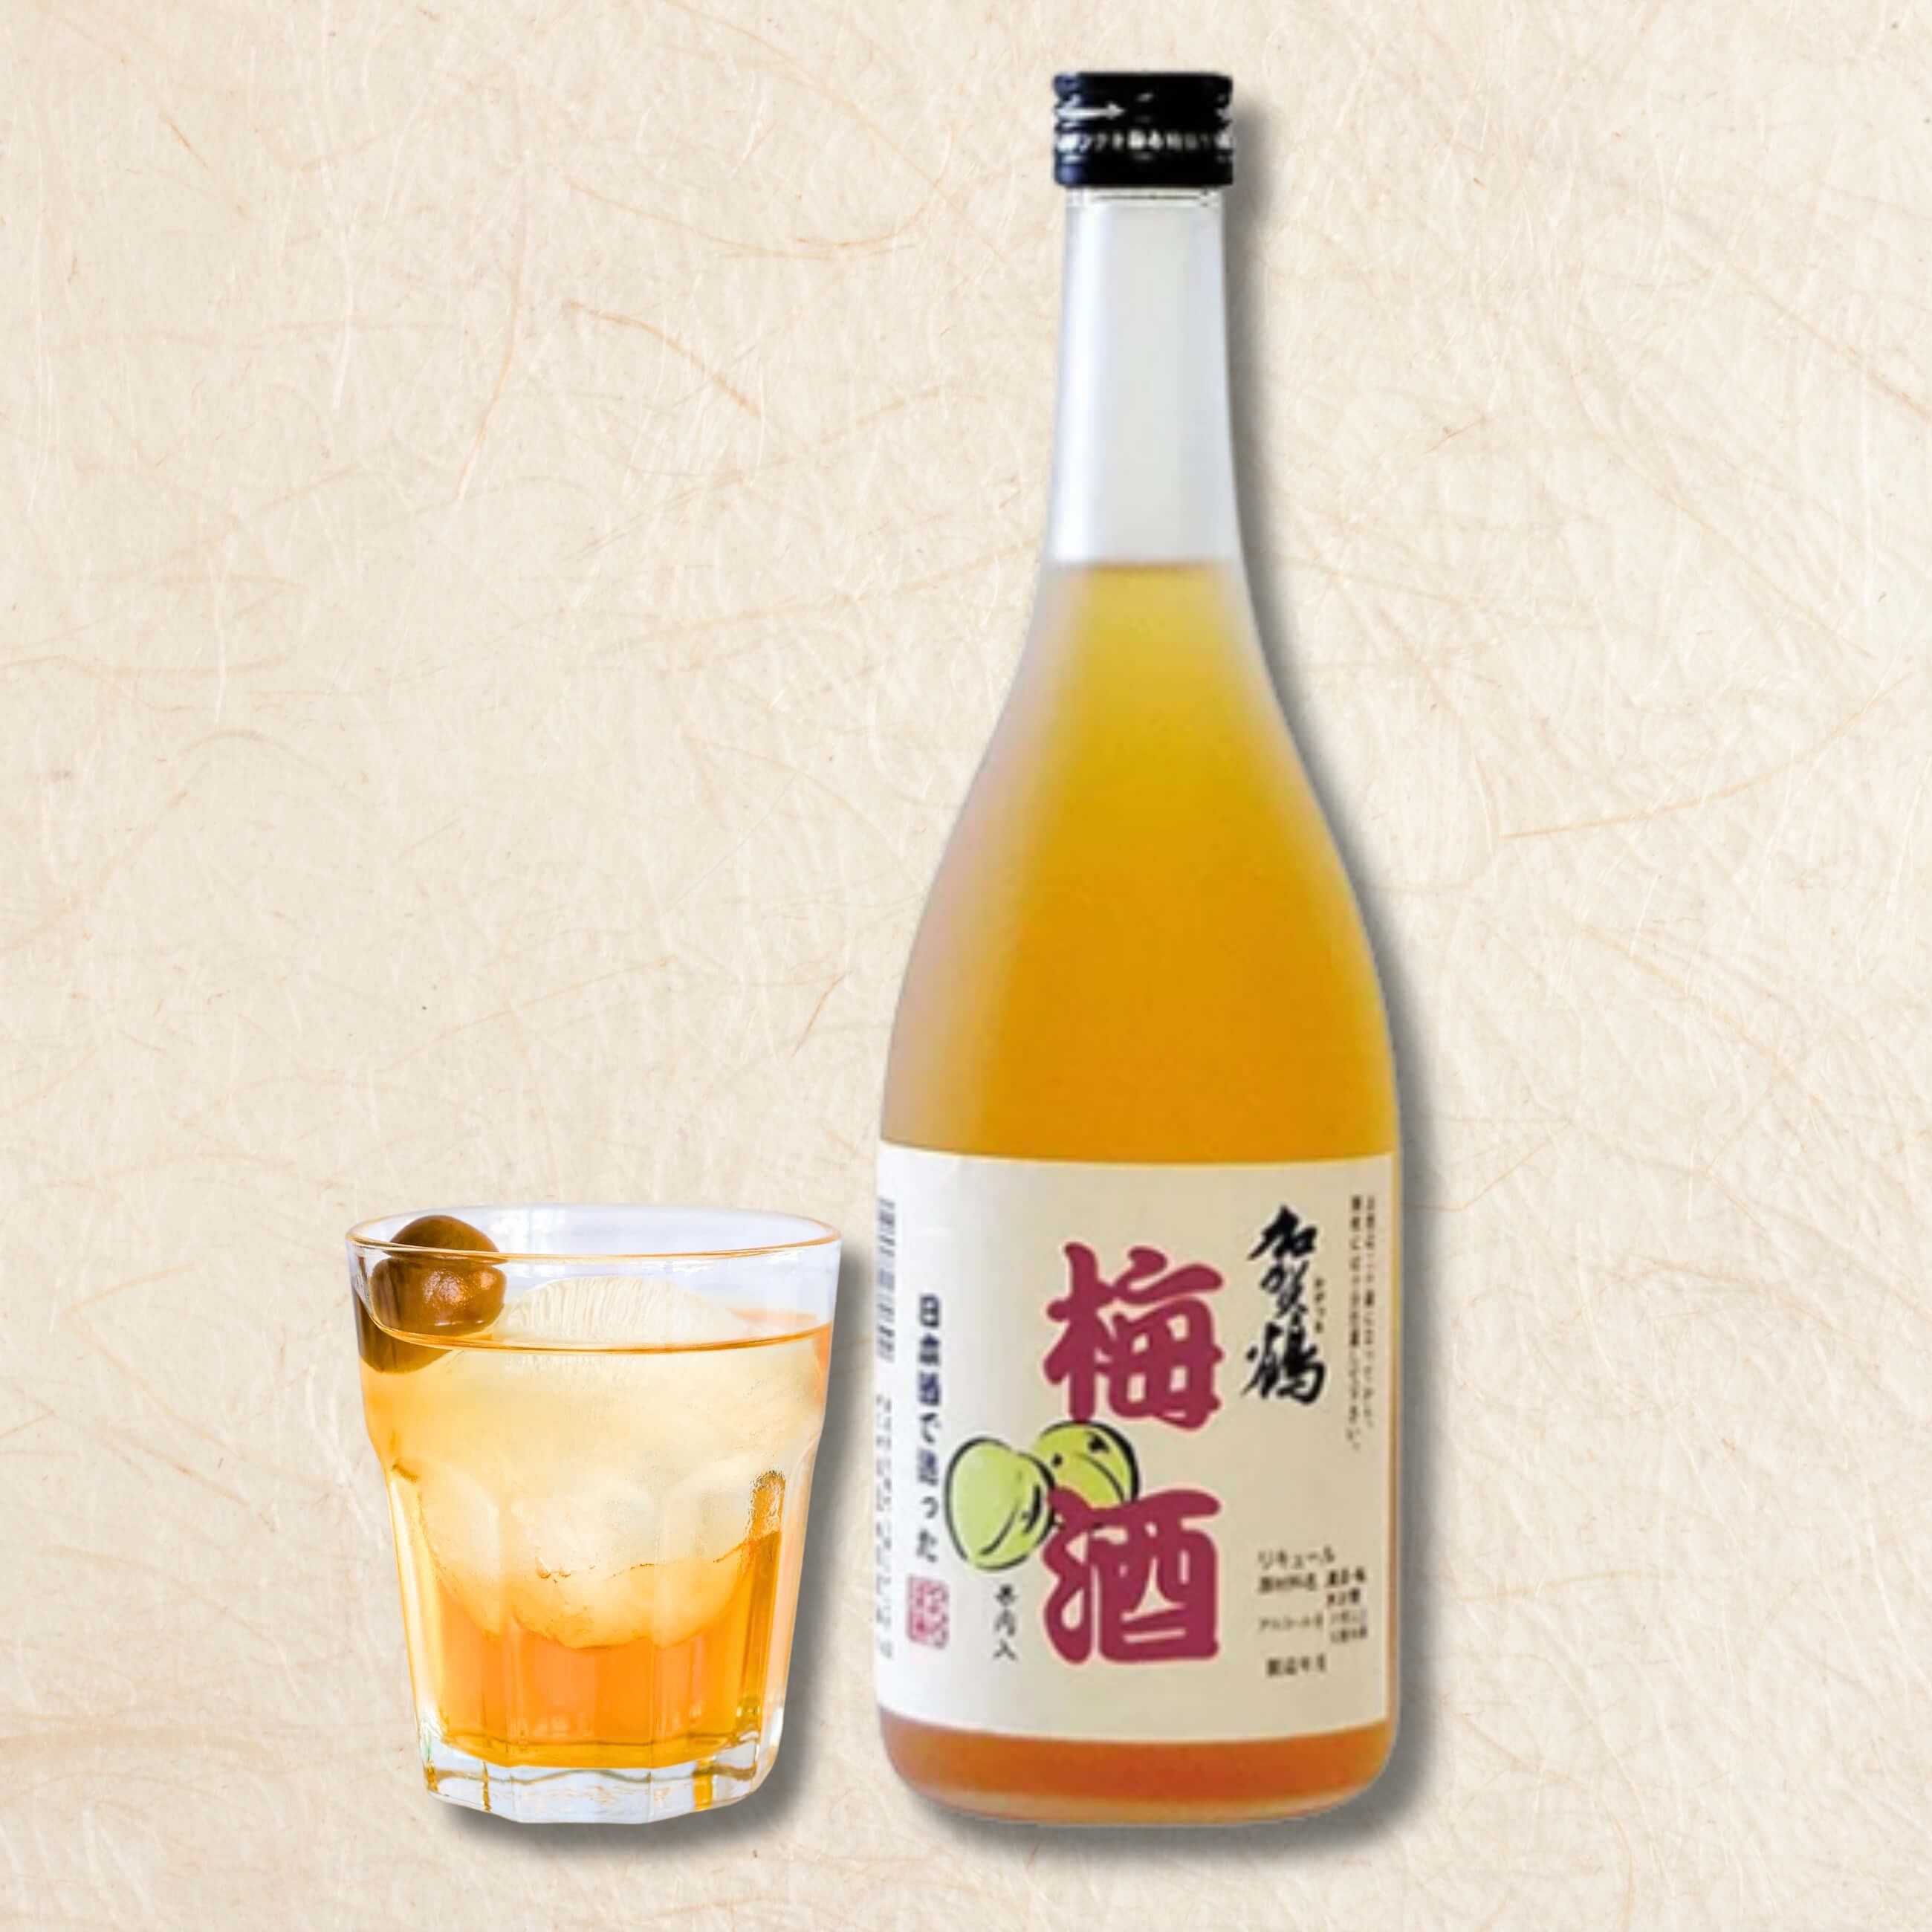 【金沢の地酒】加賀鶴 フレッシュな梅の香りと酸味が特徴の日本酒仕込梅酒  720ml